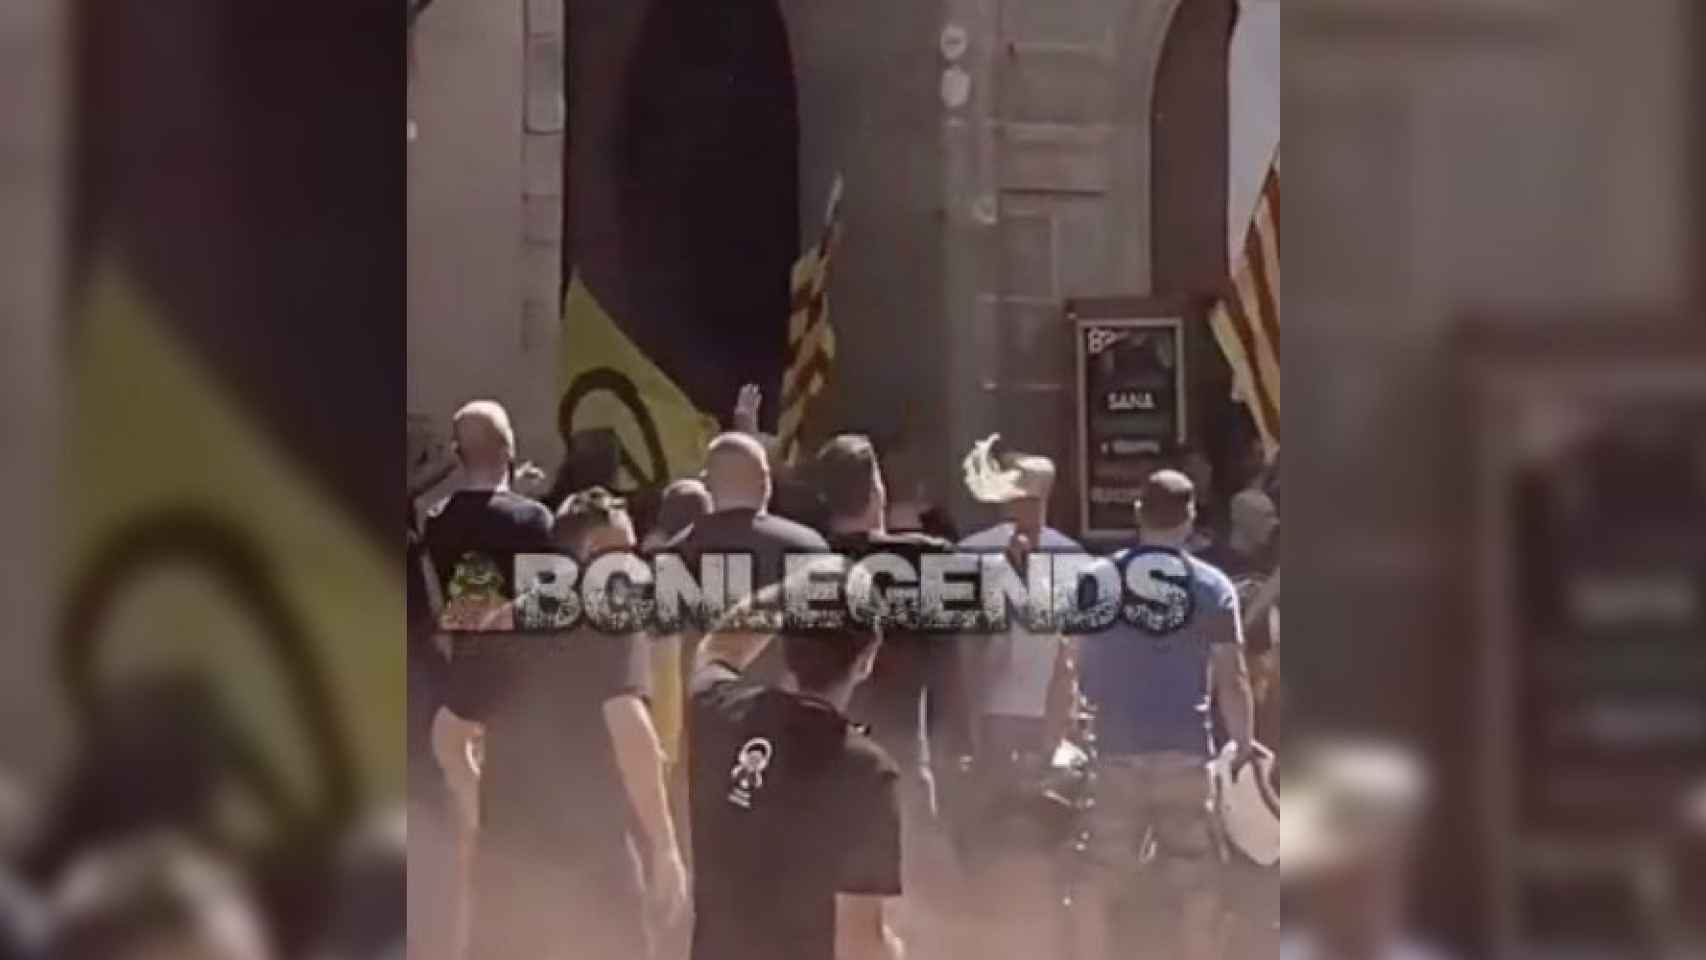 Ultras independentistas de extrema derecha y extrema izquierda enfrentándose en el Fossar de les Moreres / BCNLEGENDS